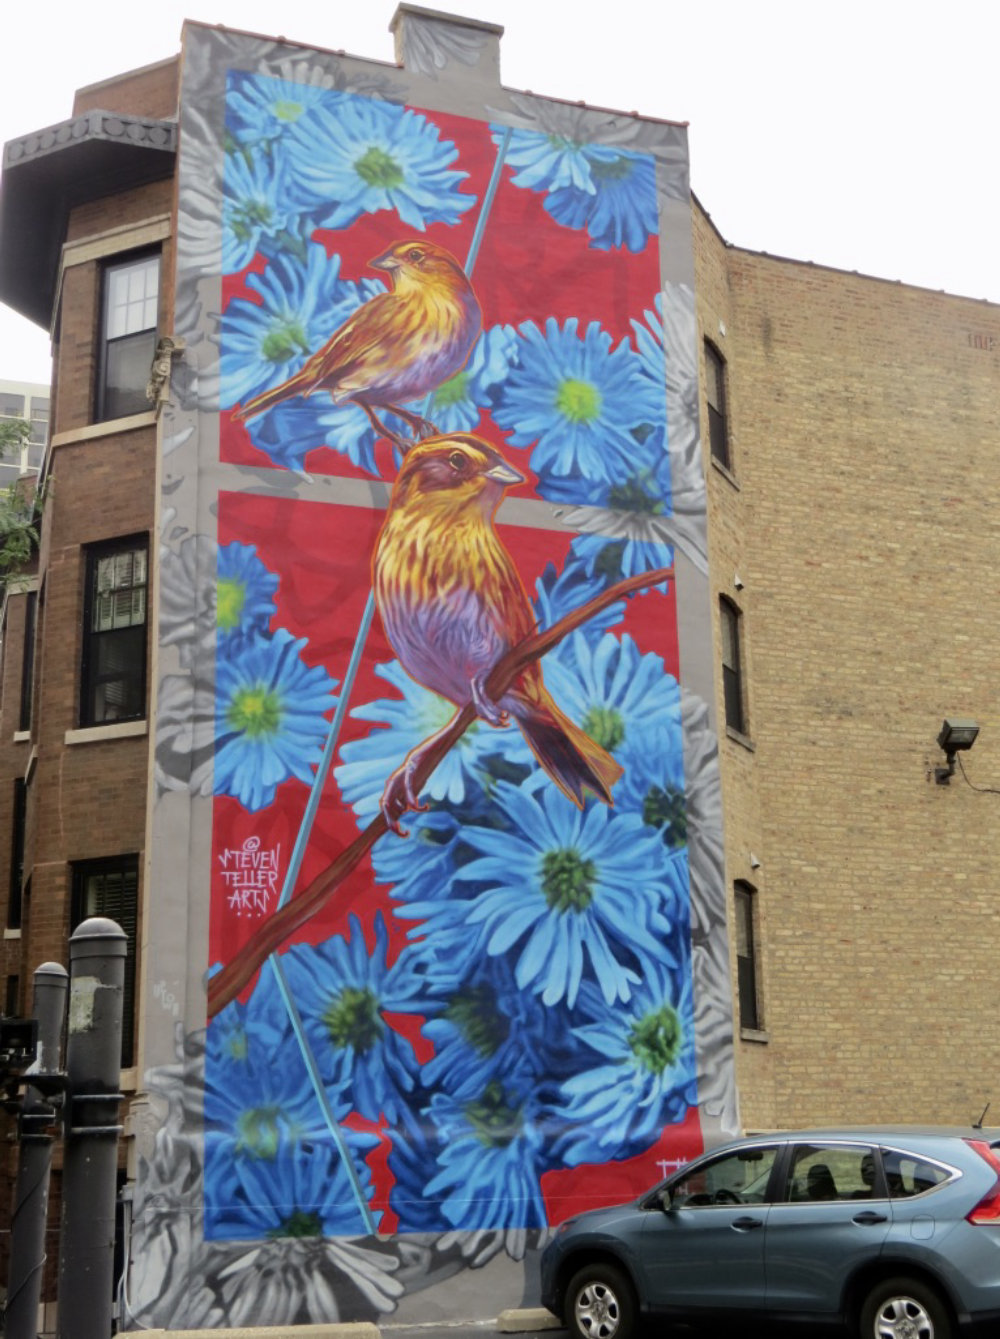 mural in Chicago by artist Steven Teller.